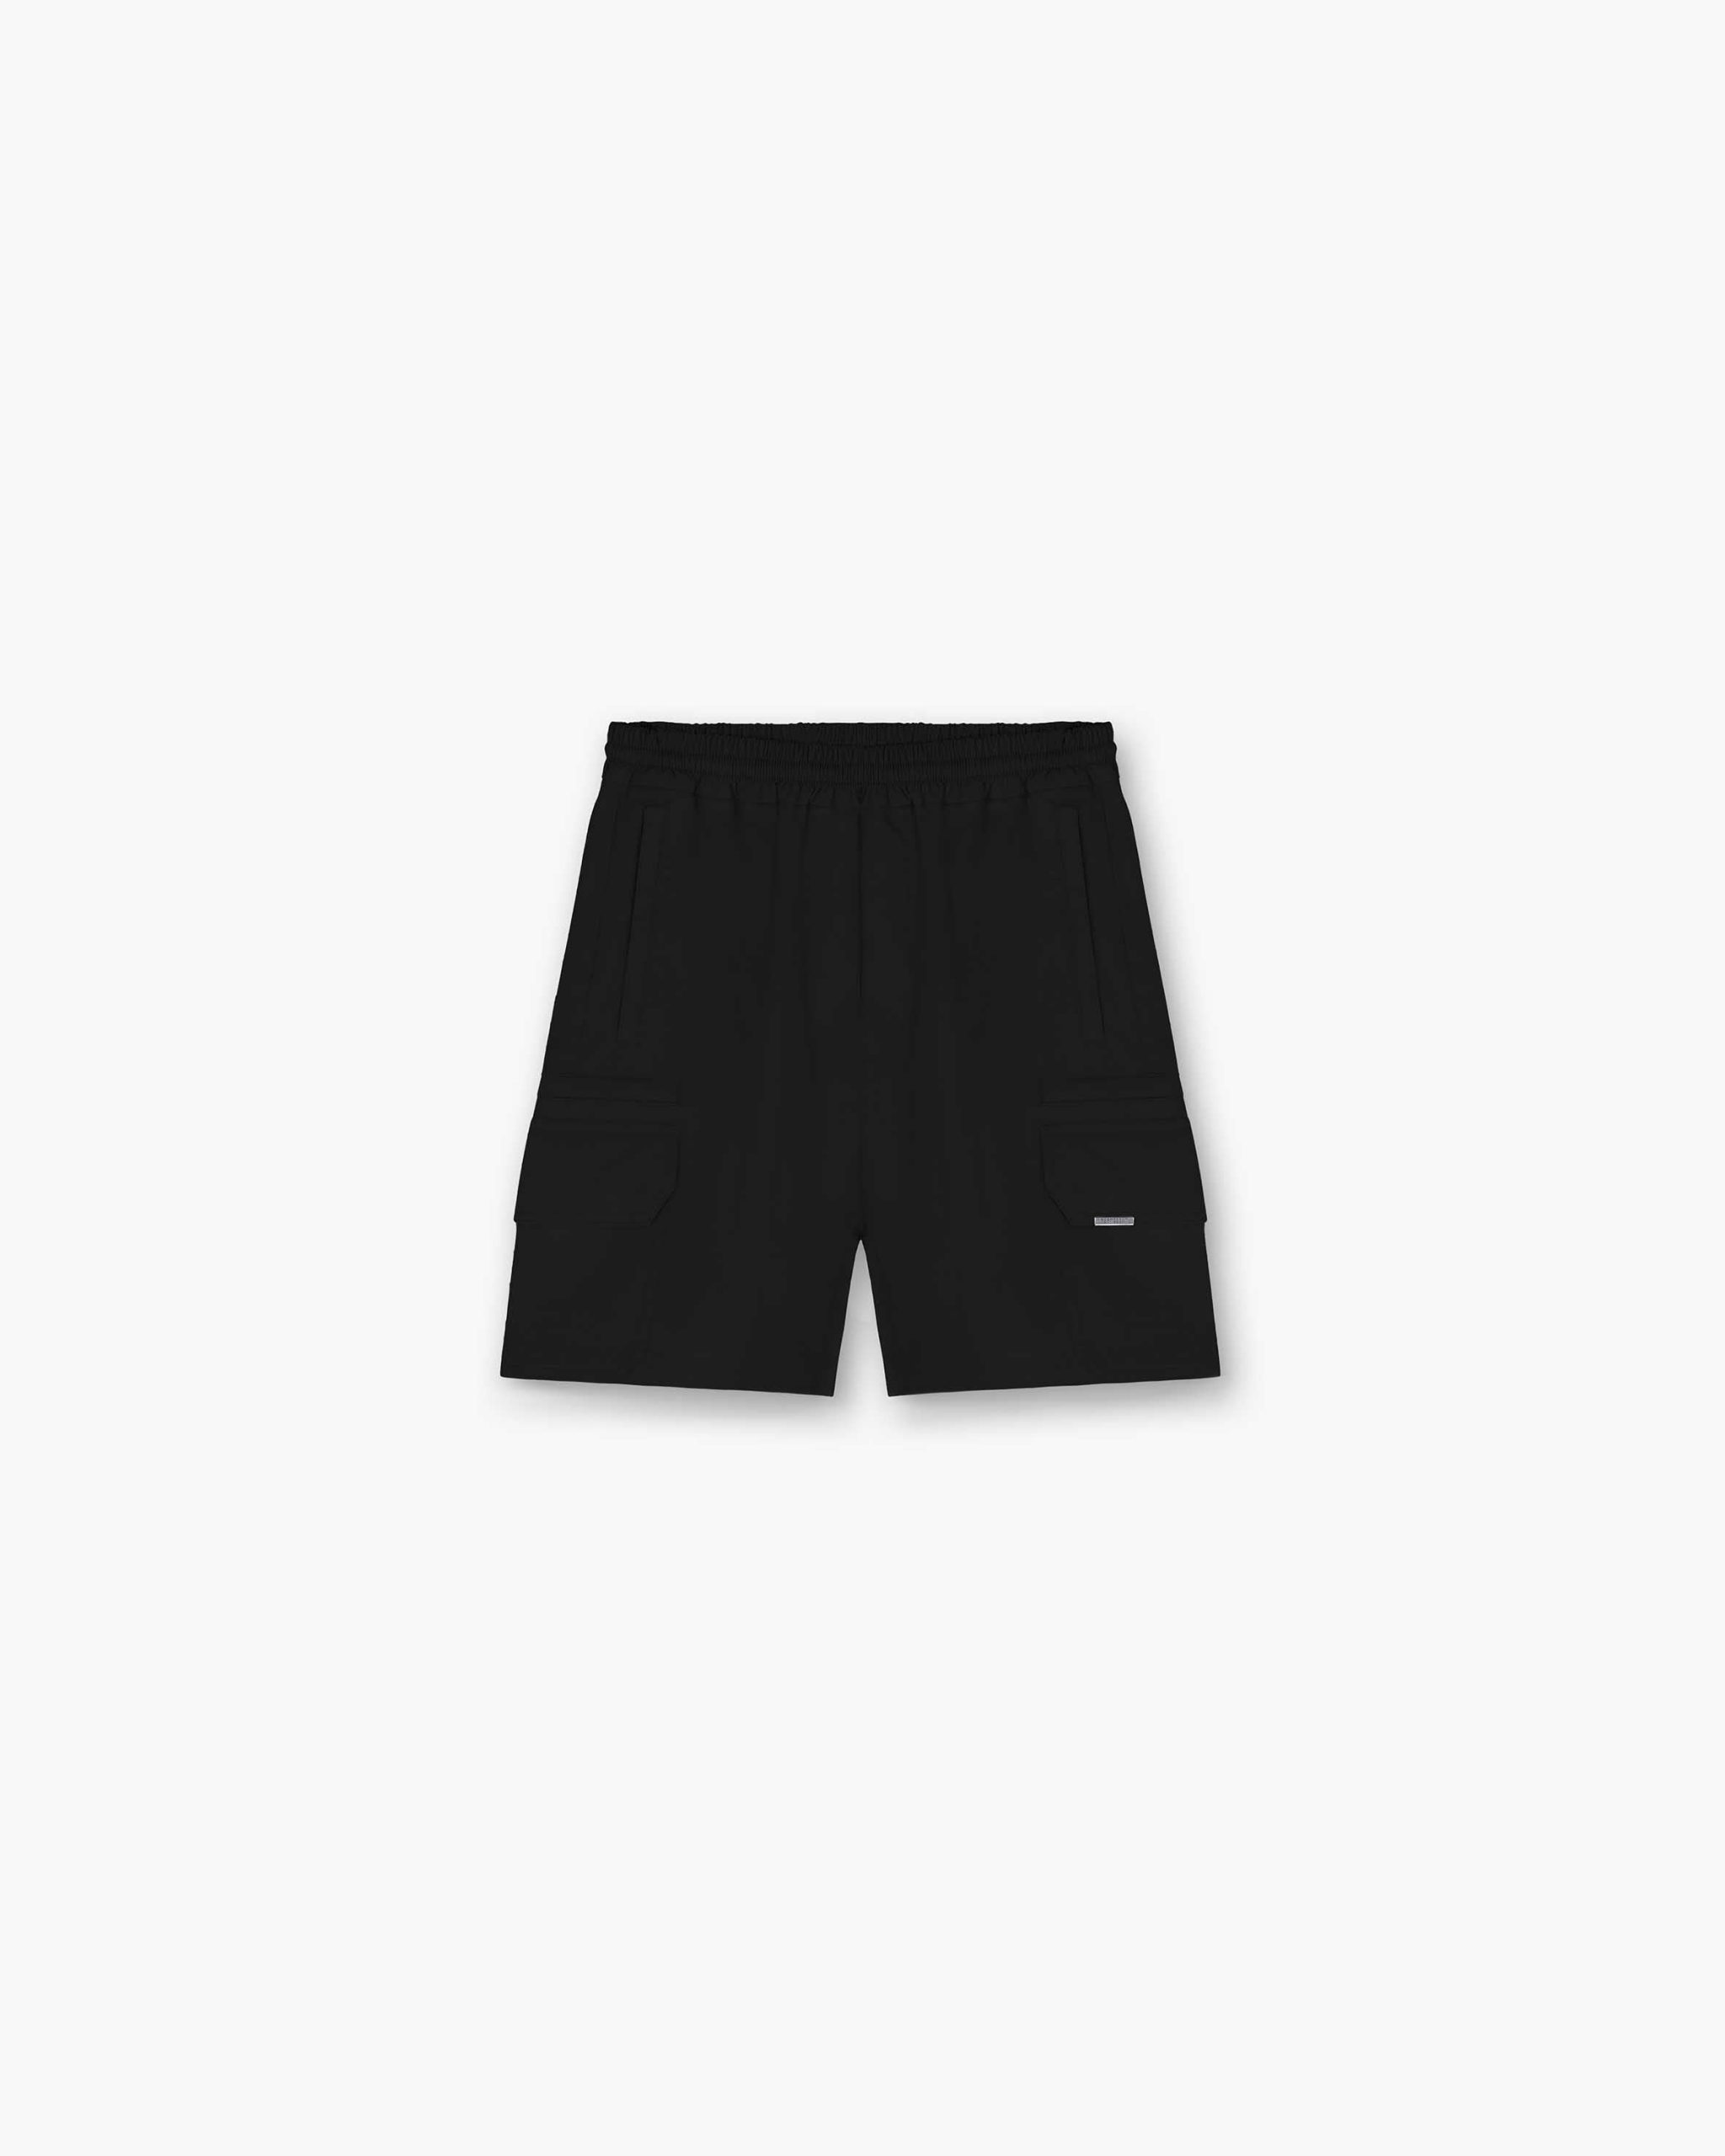 Represent Storm Cargo Shorts - Black - Represemt Clo® Online Shop